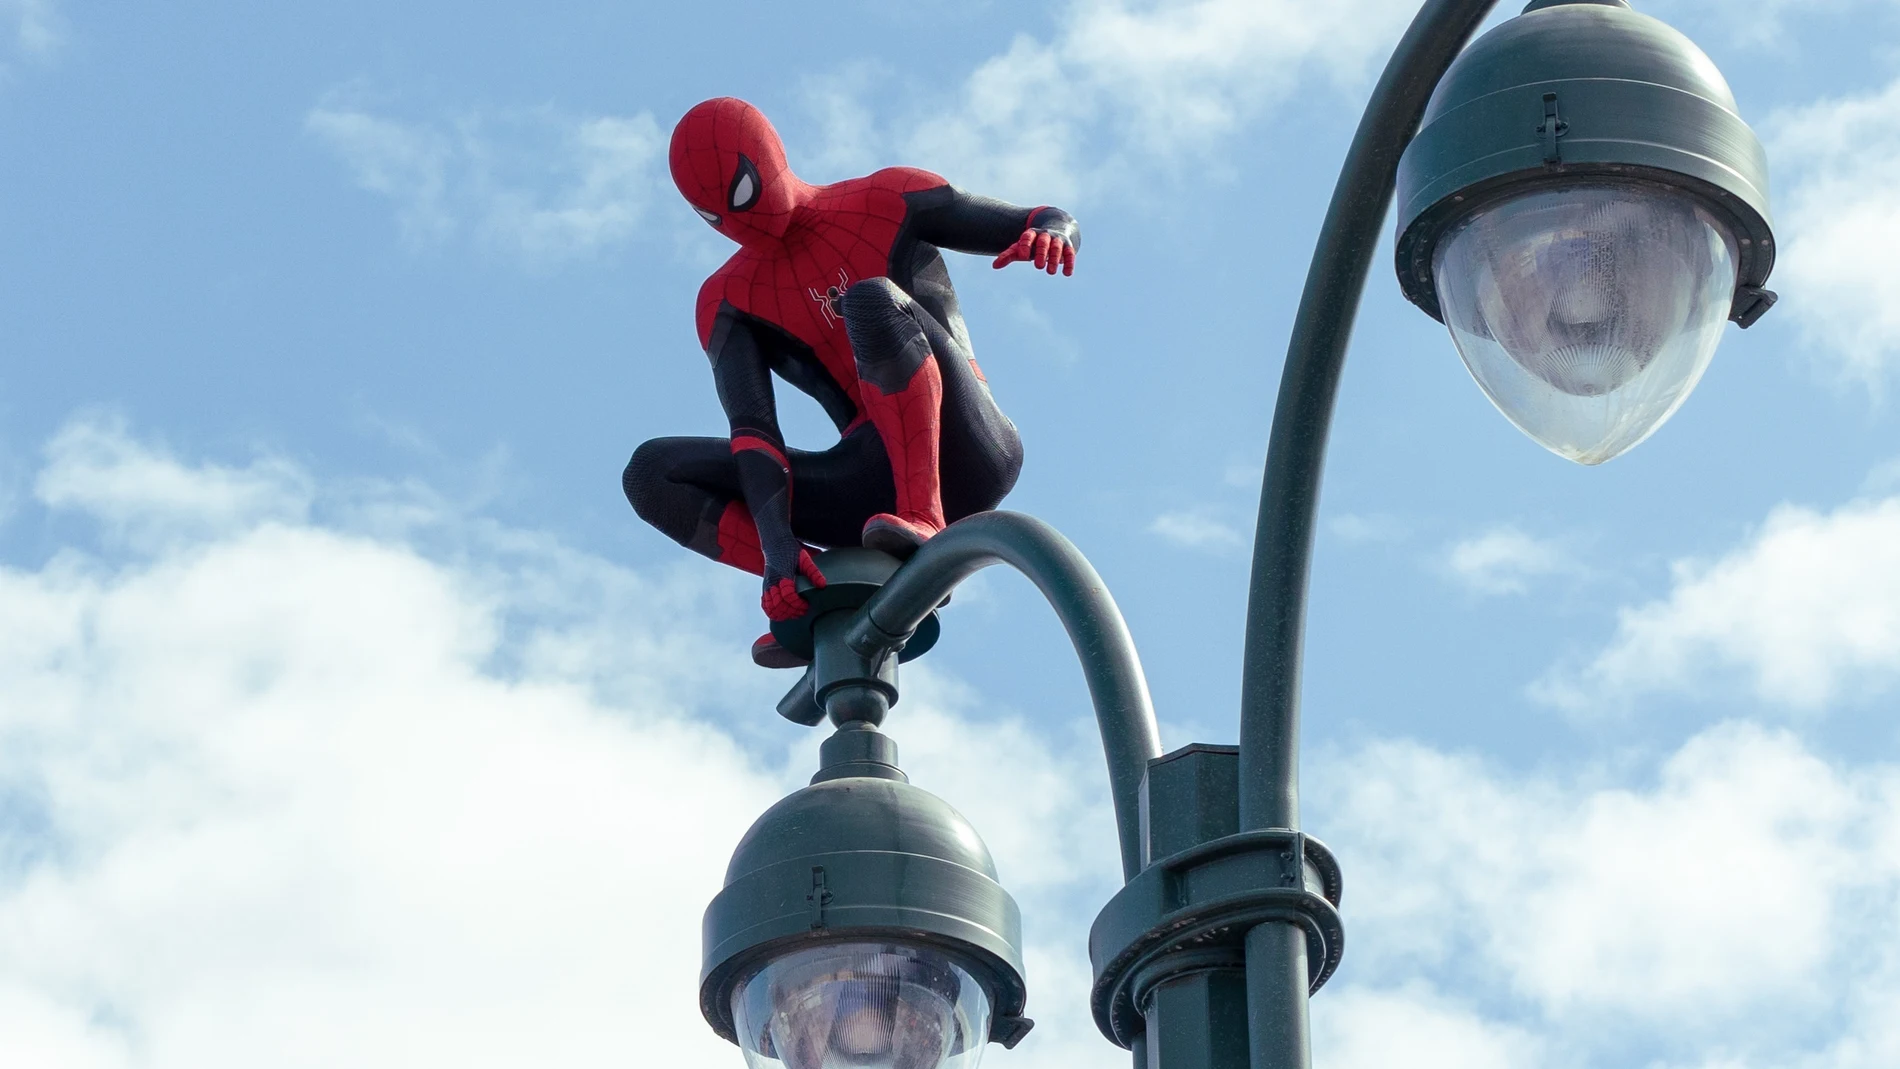 Fotograma cedido por Sony Pictures y Marvel Studios donde aparece Tom Holland en el doble papel de Peter Parker/Spider-Man, durante una escena de la película "Spider-Man: No Way Home", que se estrena este fin de semana. EFE/ Matt Kennedy / Sony Pictures/Marvel Studios